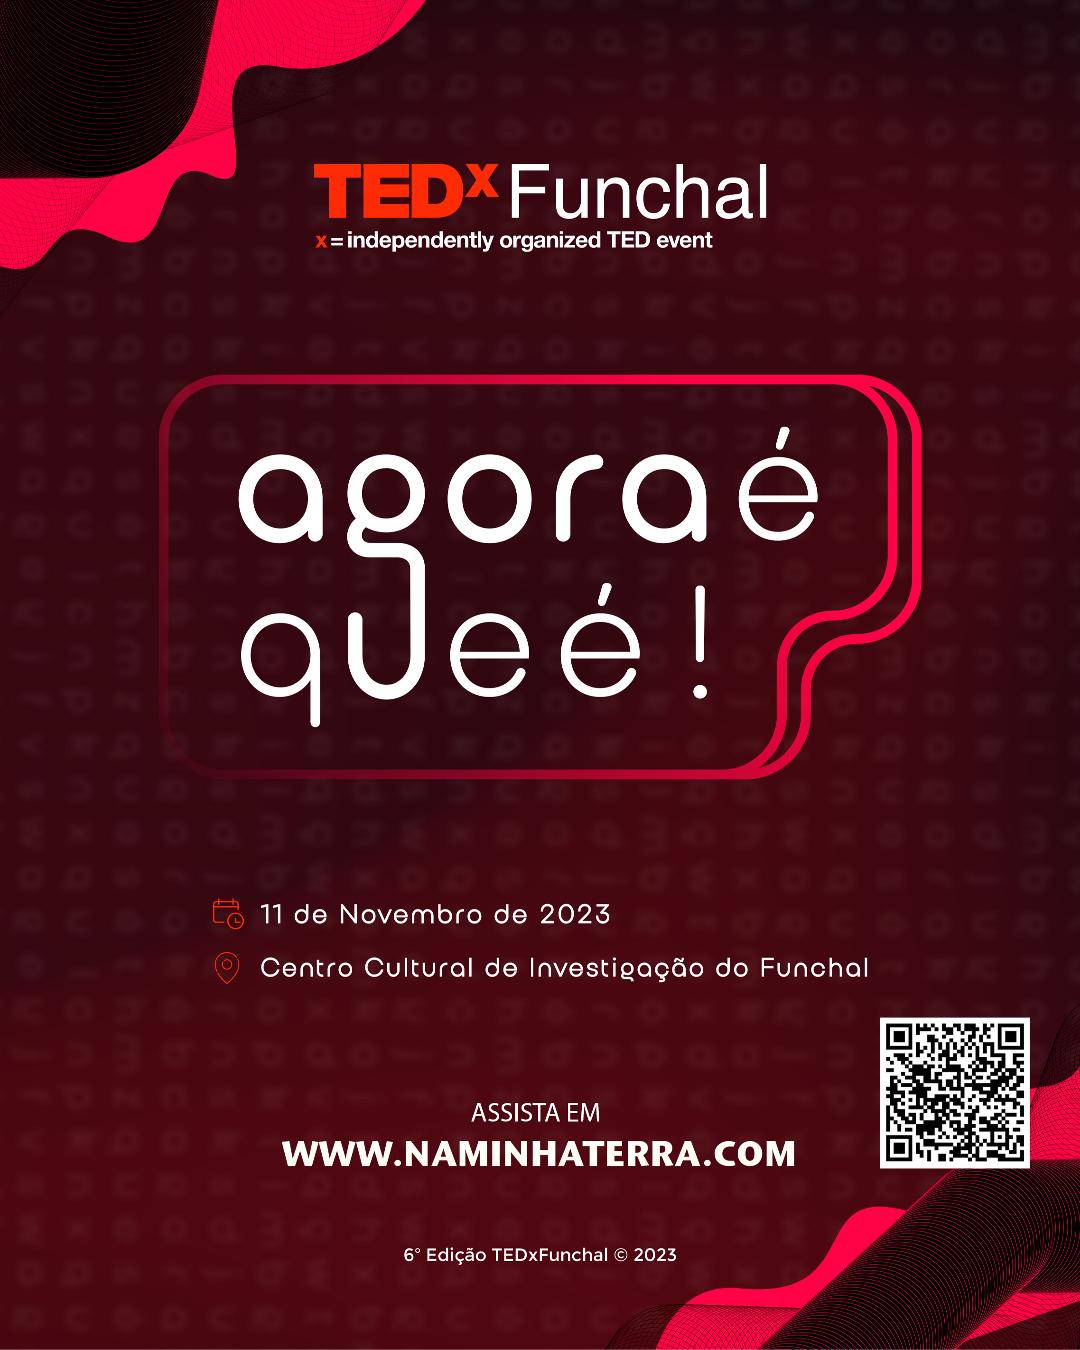 TEDX FUNCHAL 2023 | Agora é que é